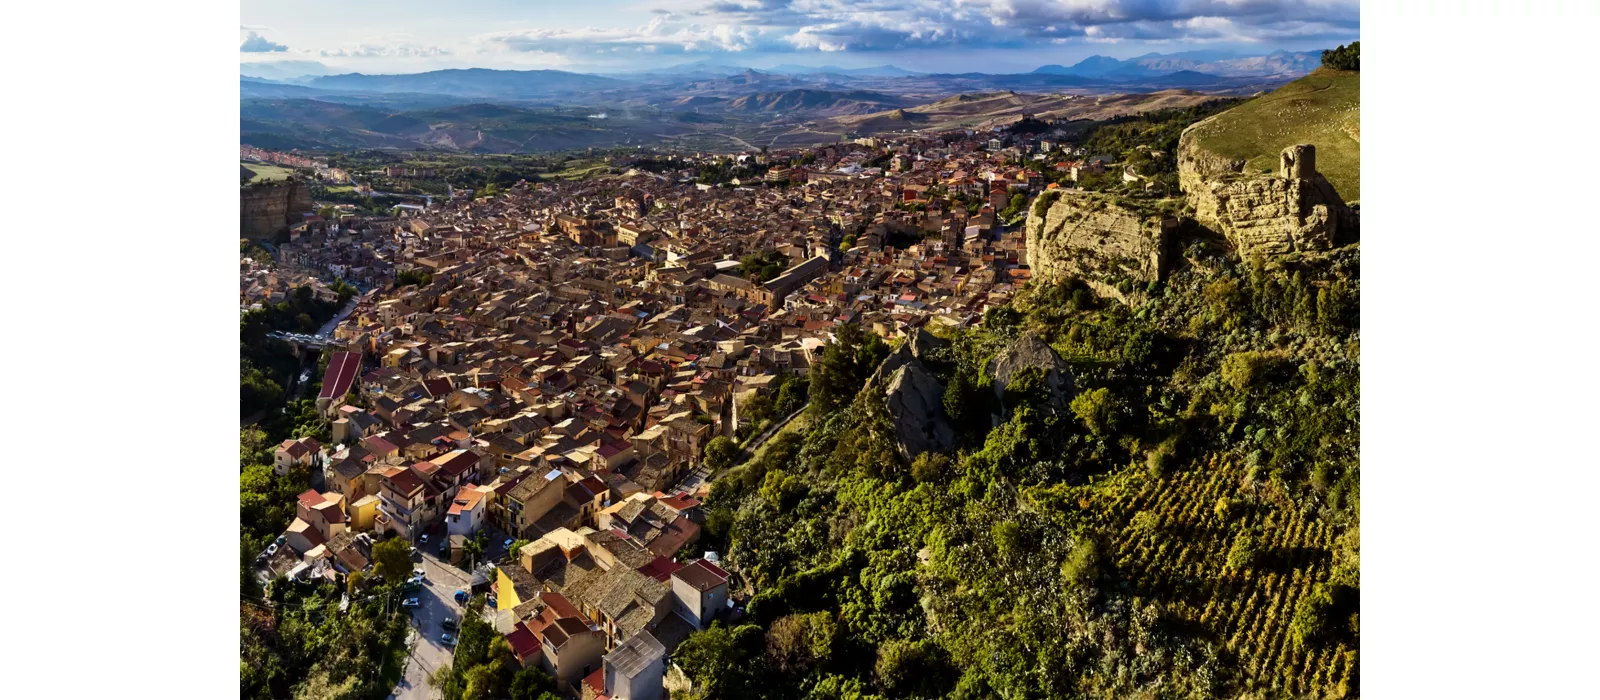 L’entroterra palermitano: storia, natura e tradizione nella Sicilia più autentica